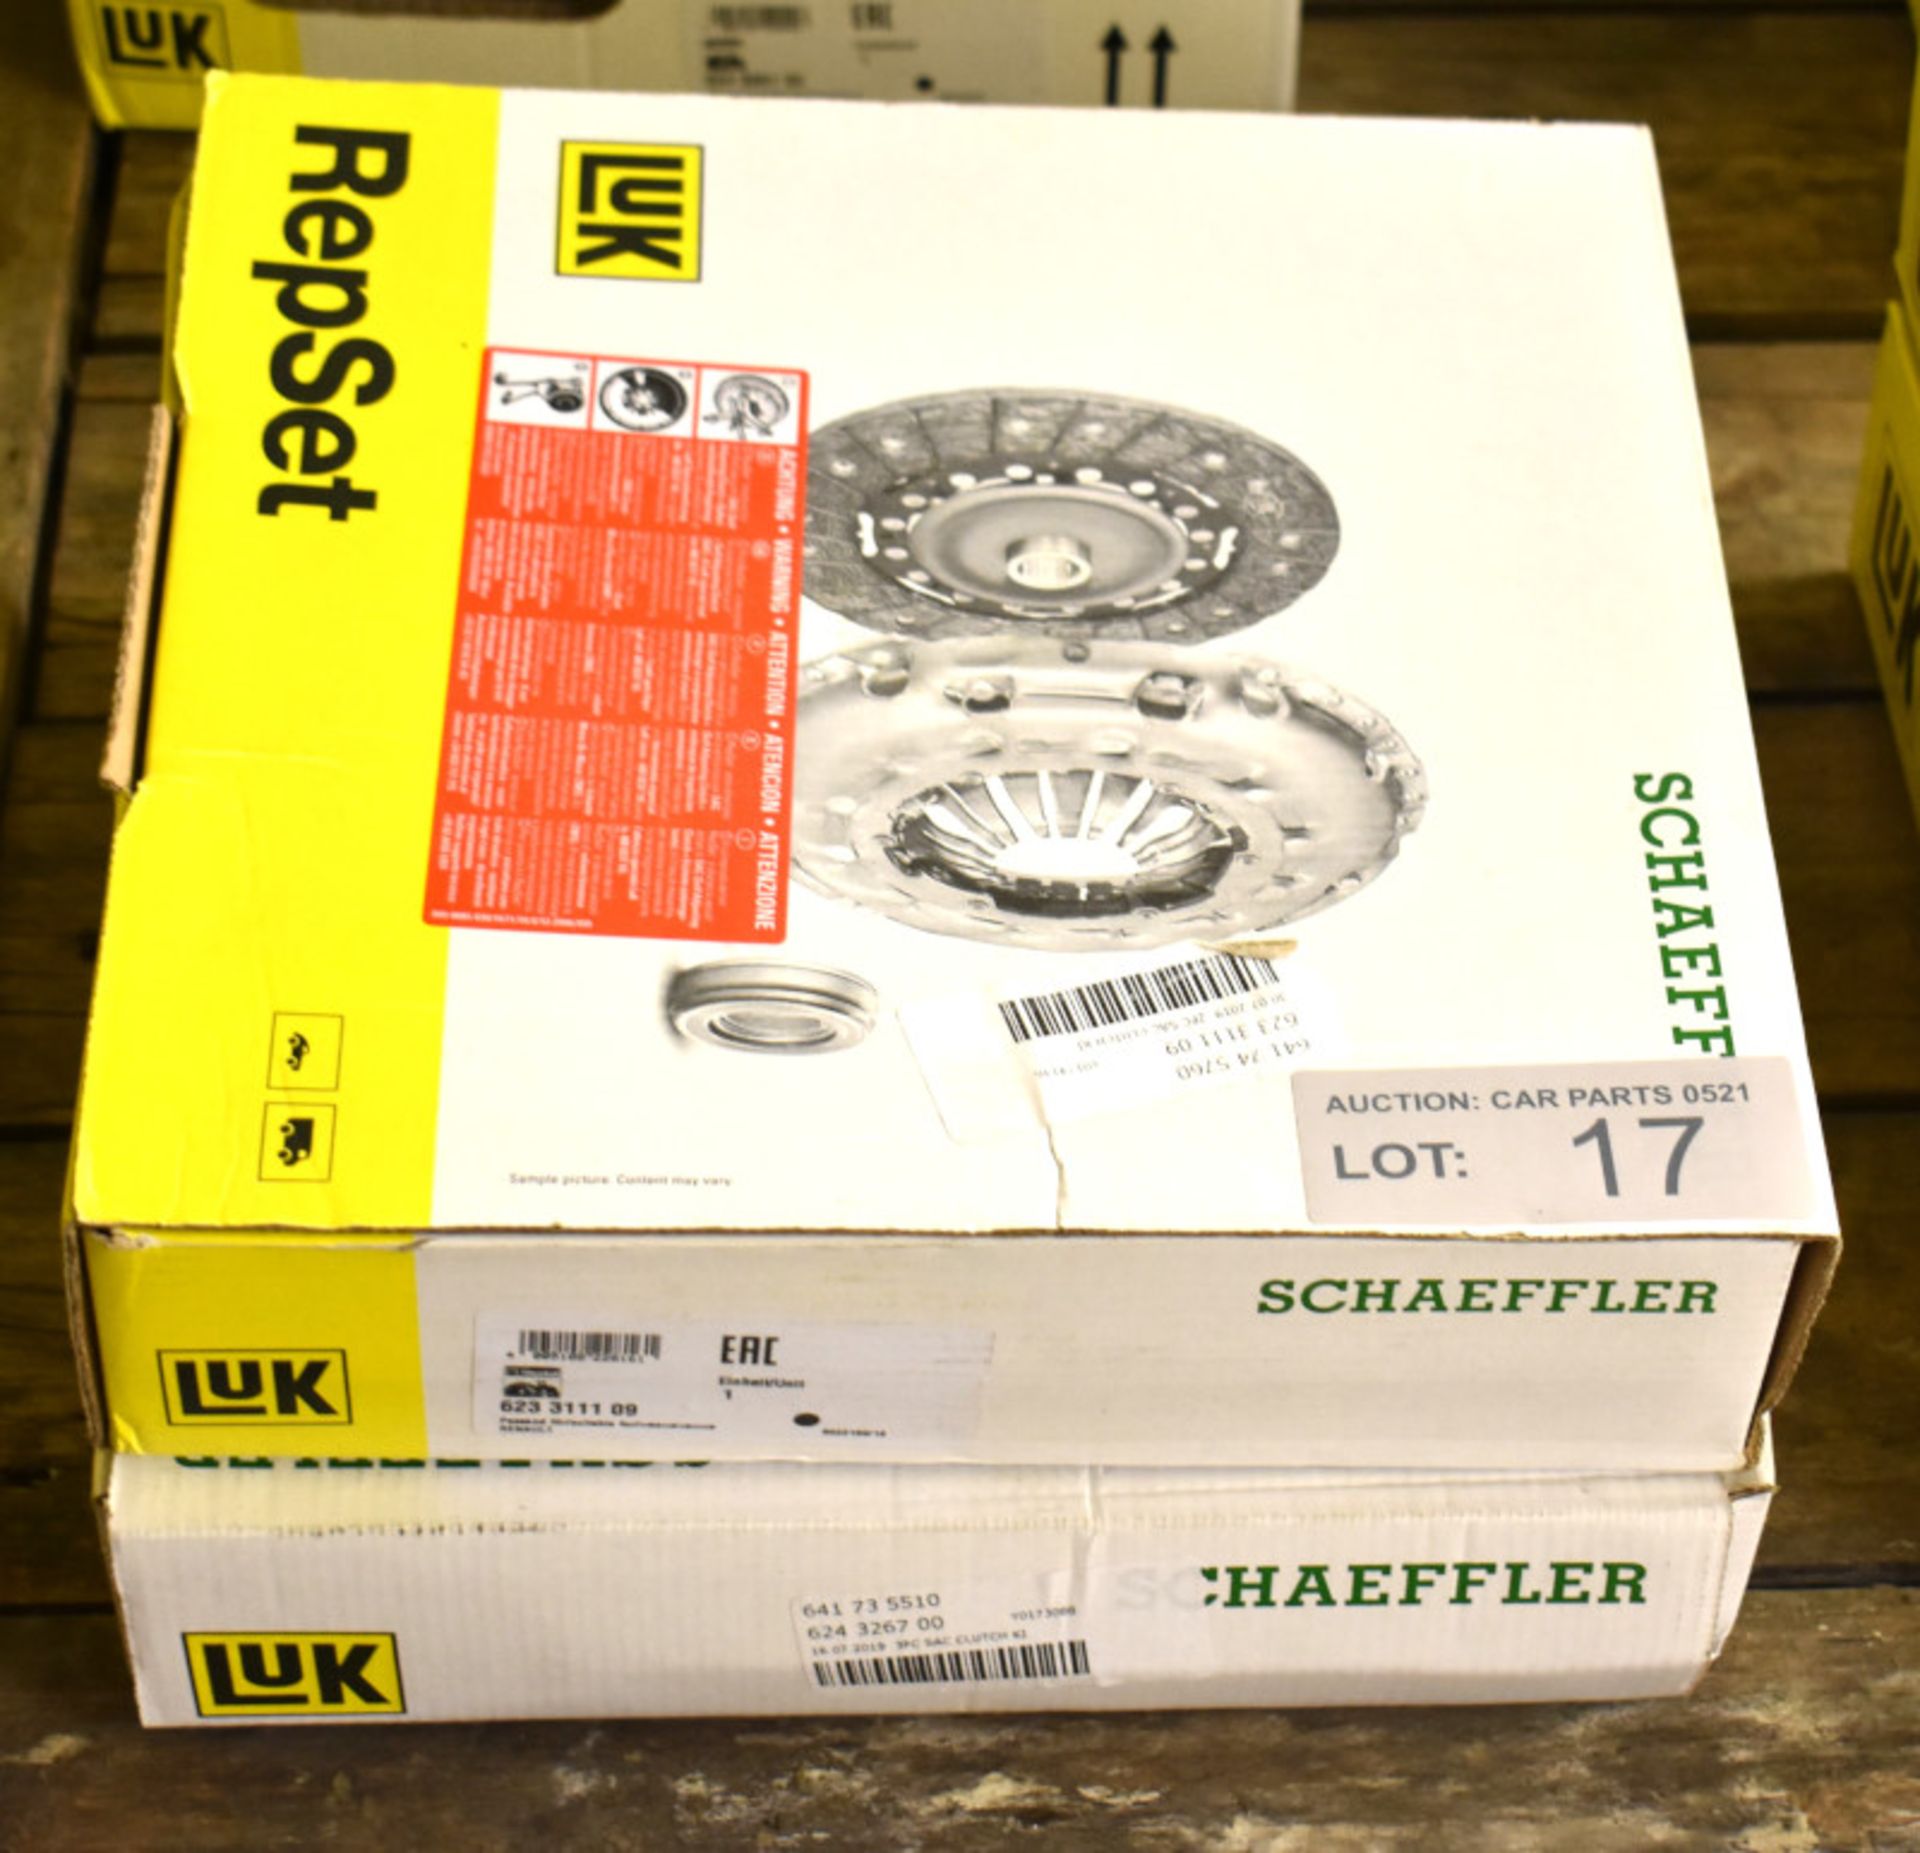 2x LUK Schaeffler Repset Clutch Kits - Models - 623 3111 09 & 624 3267 00